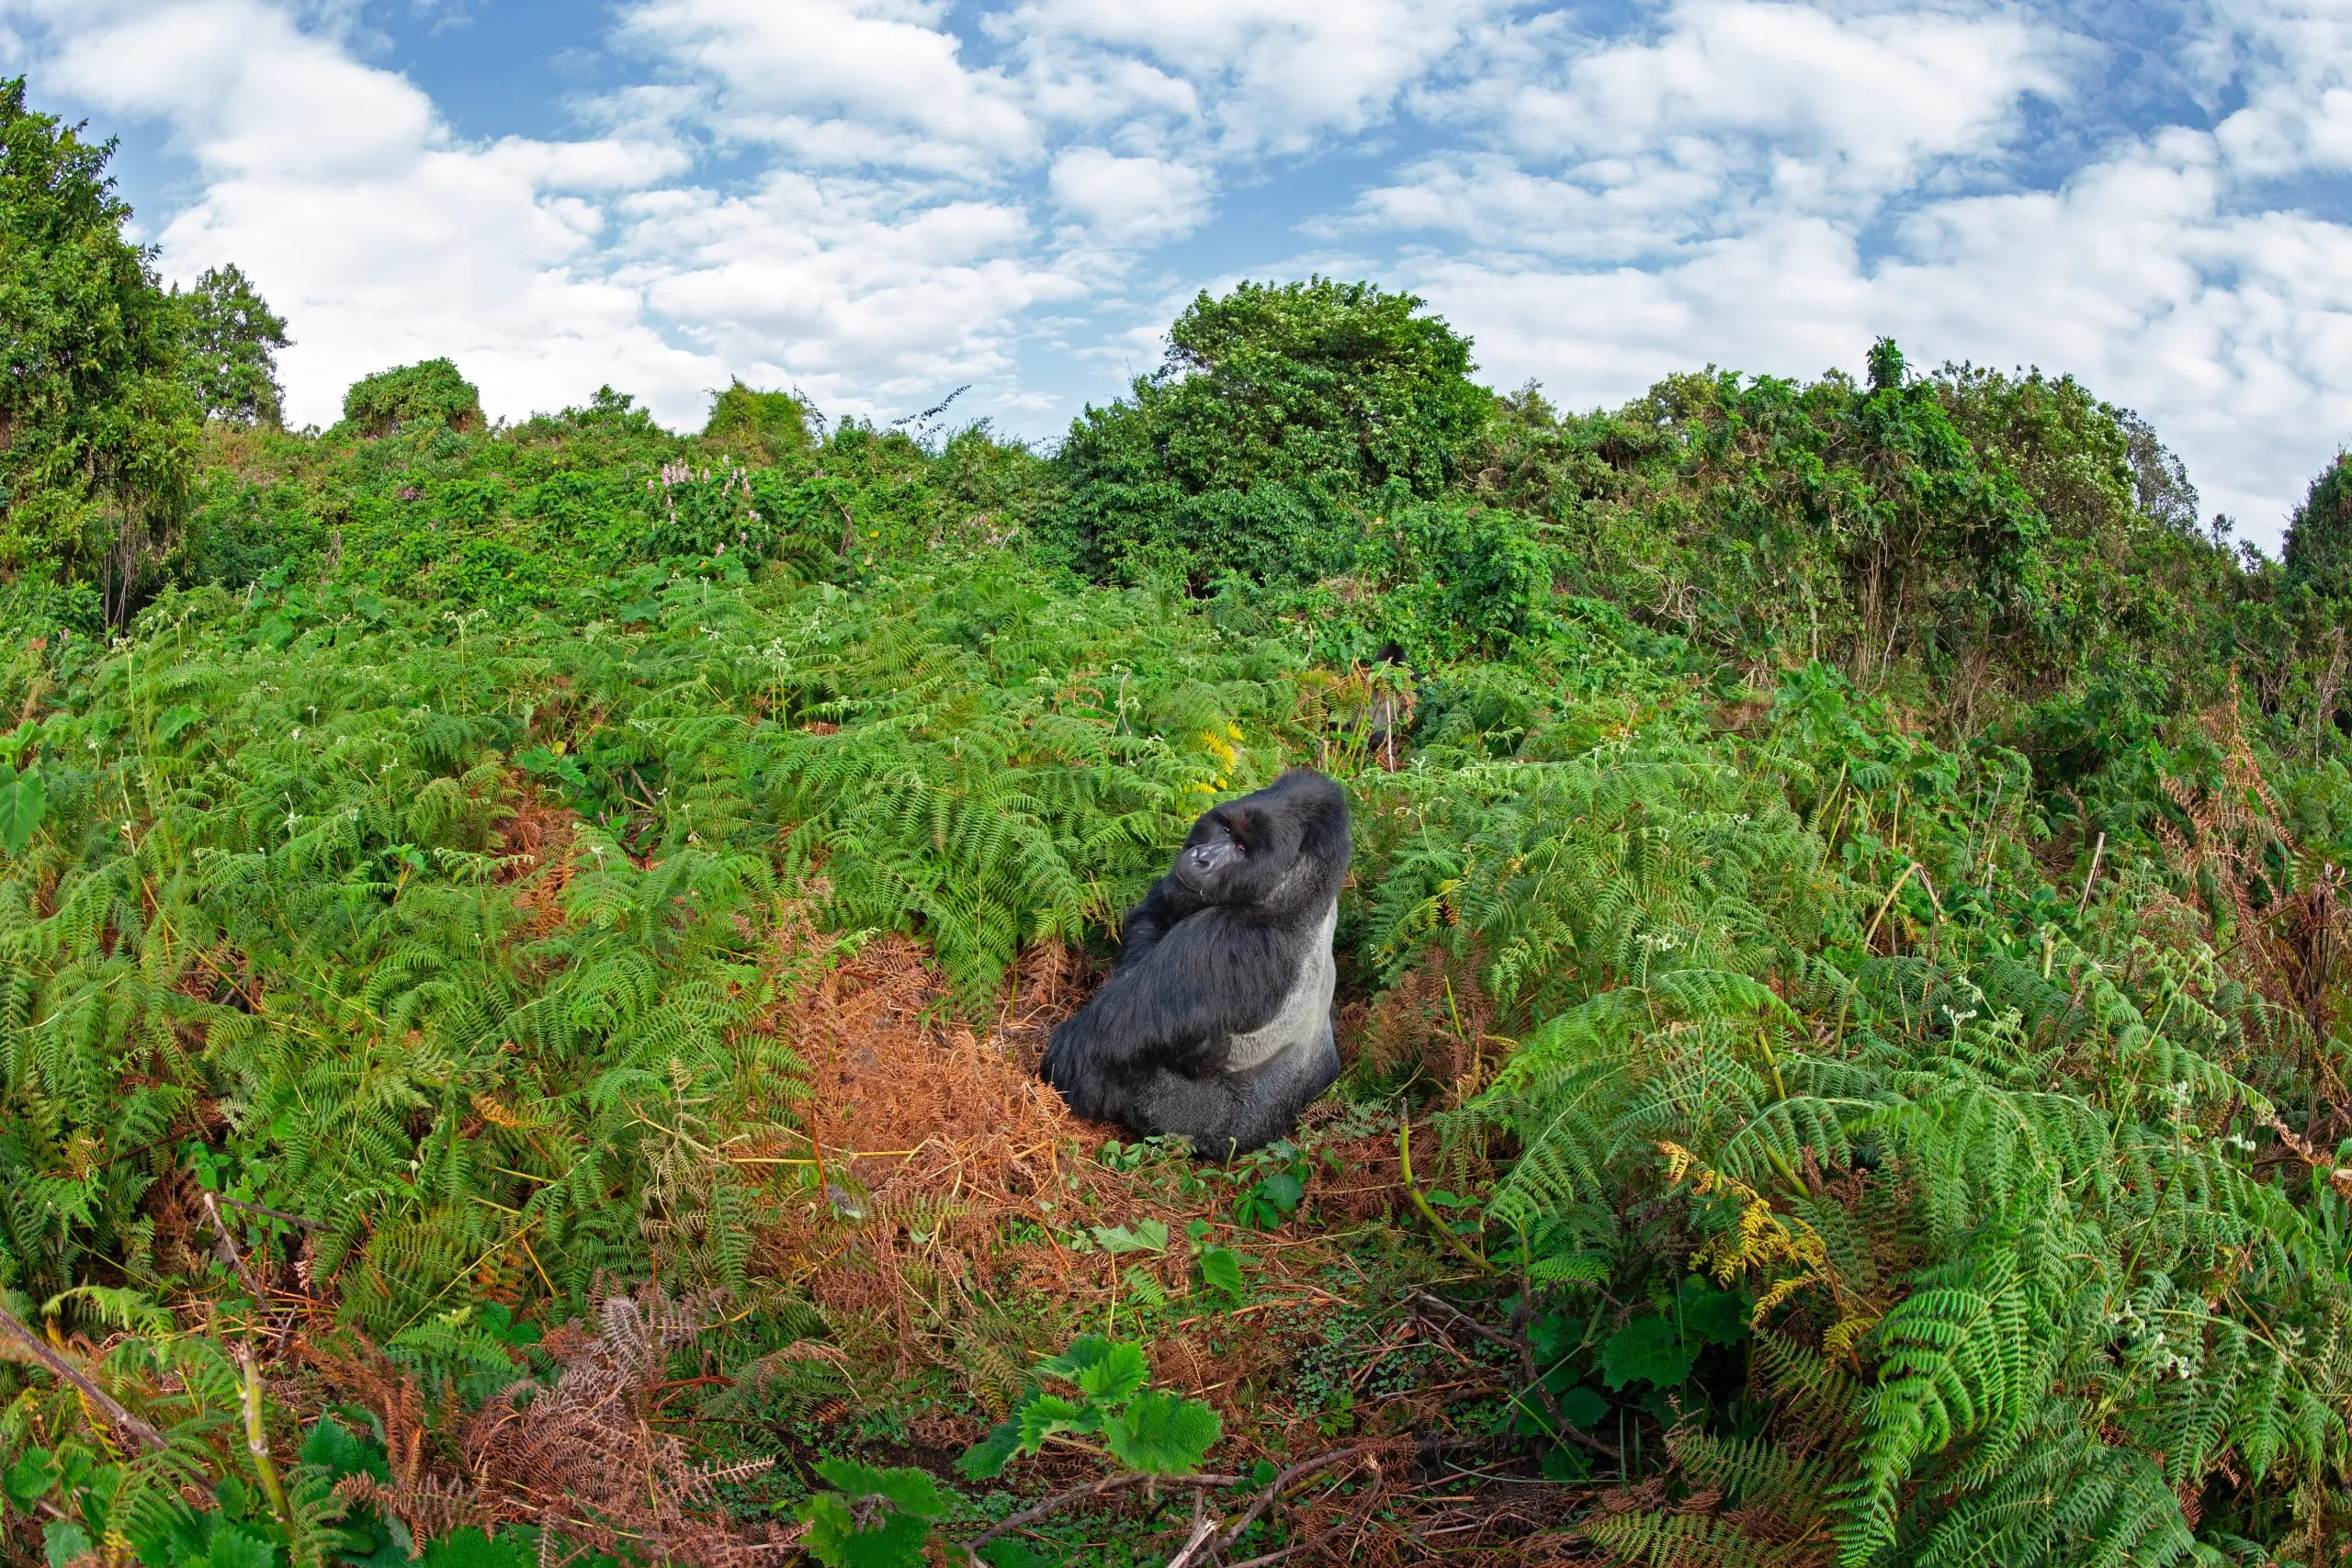 Berggorilla im Regenwald. Seltene Gorillas in den ugandischen Bergen. Wildtiere in Afrika.